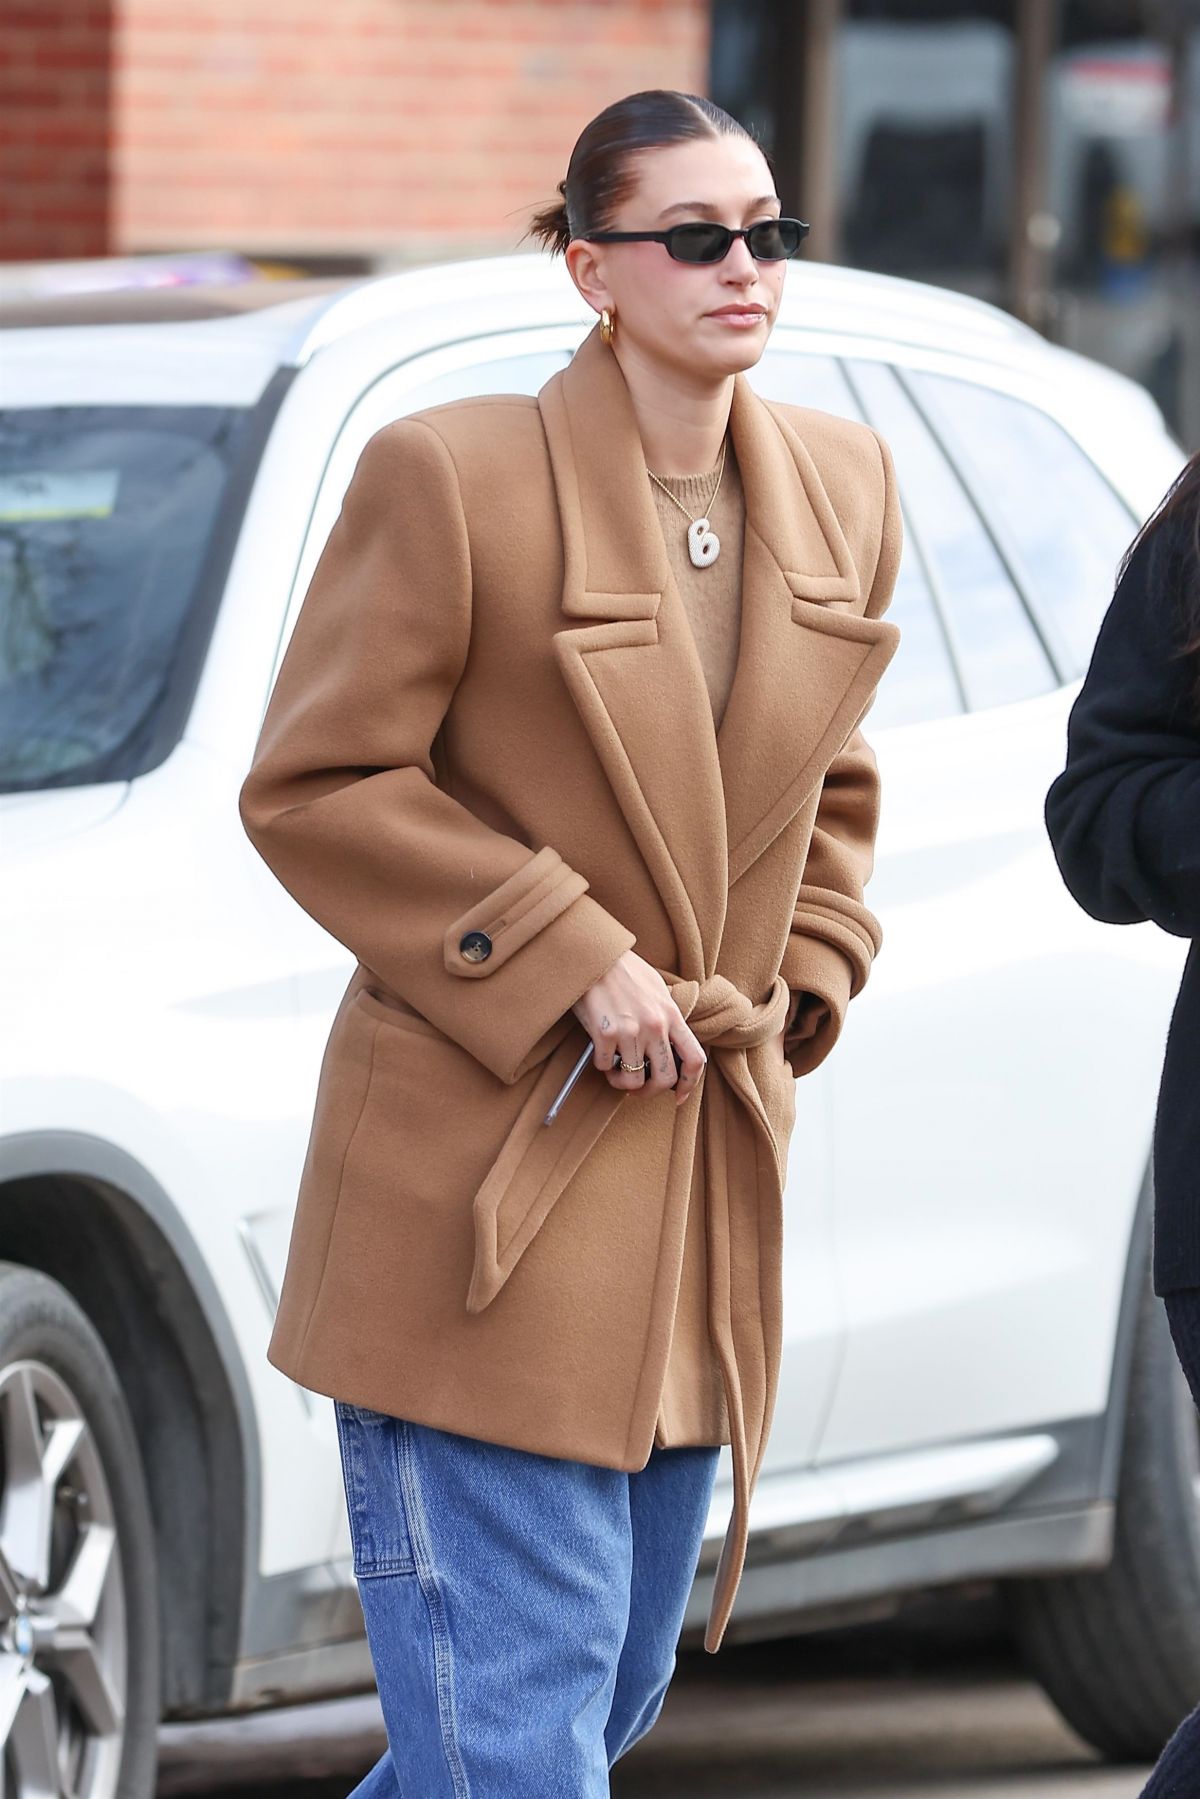 Hailey Bieber in Aspen Breakfast Look: Long Brown Jacket & Denim Style